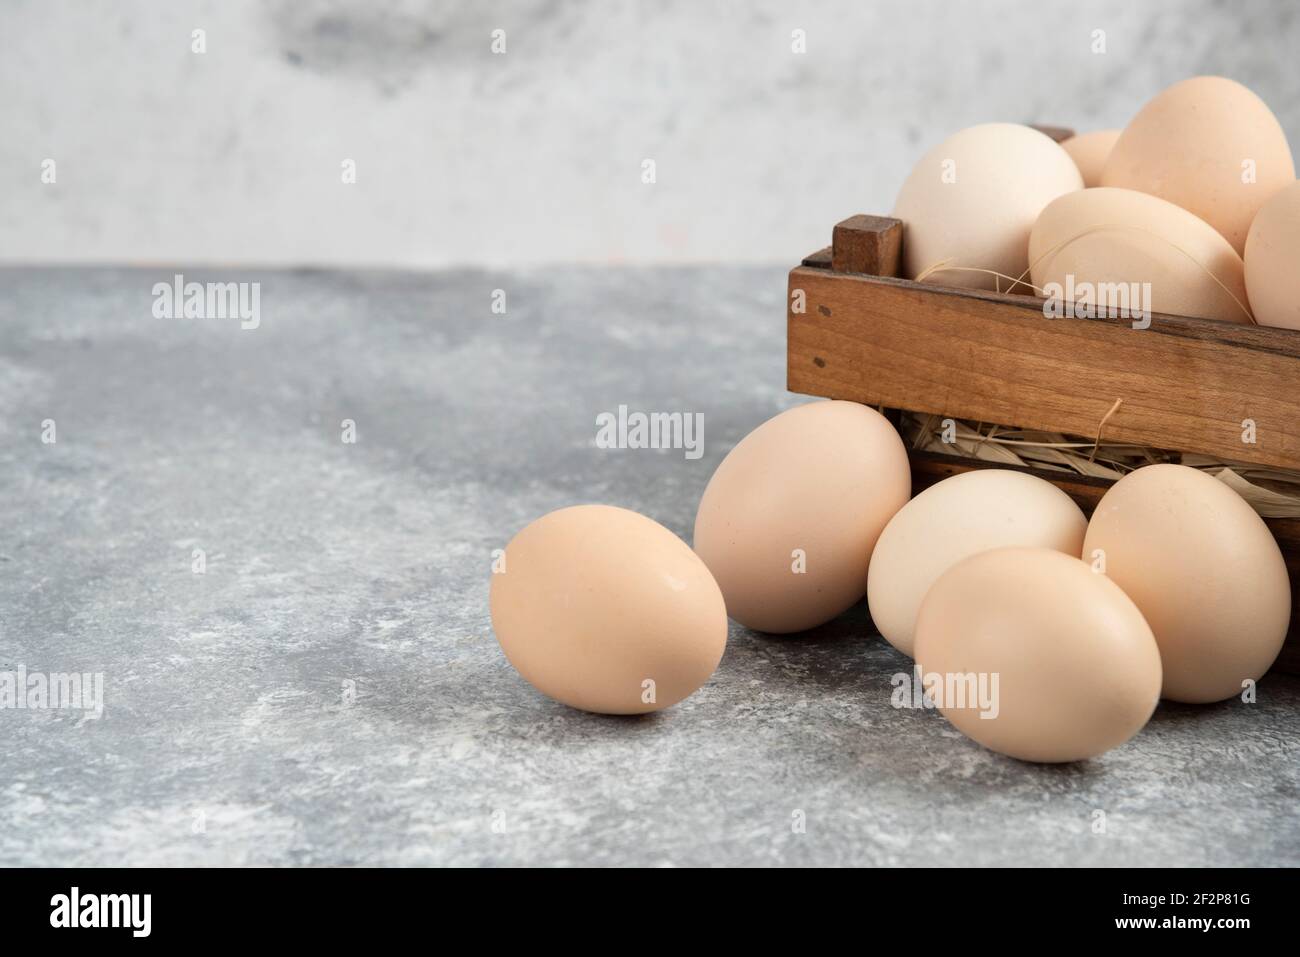 Holzkiste mit Bio-rohen Eiern auf Marmoroberfläche Stockfoto